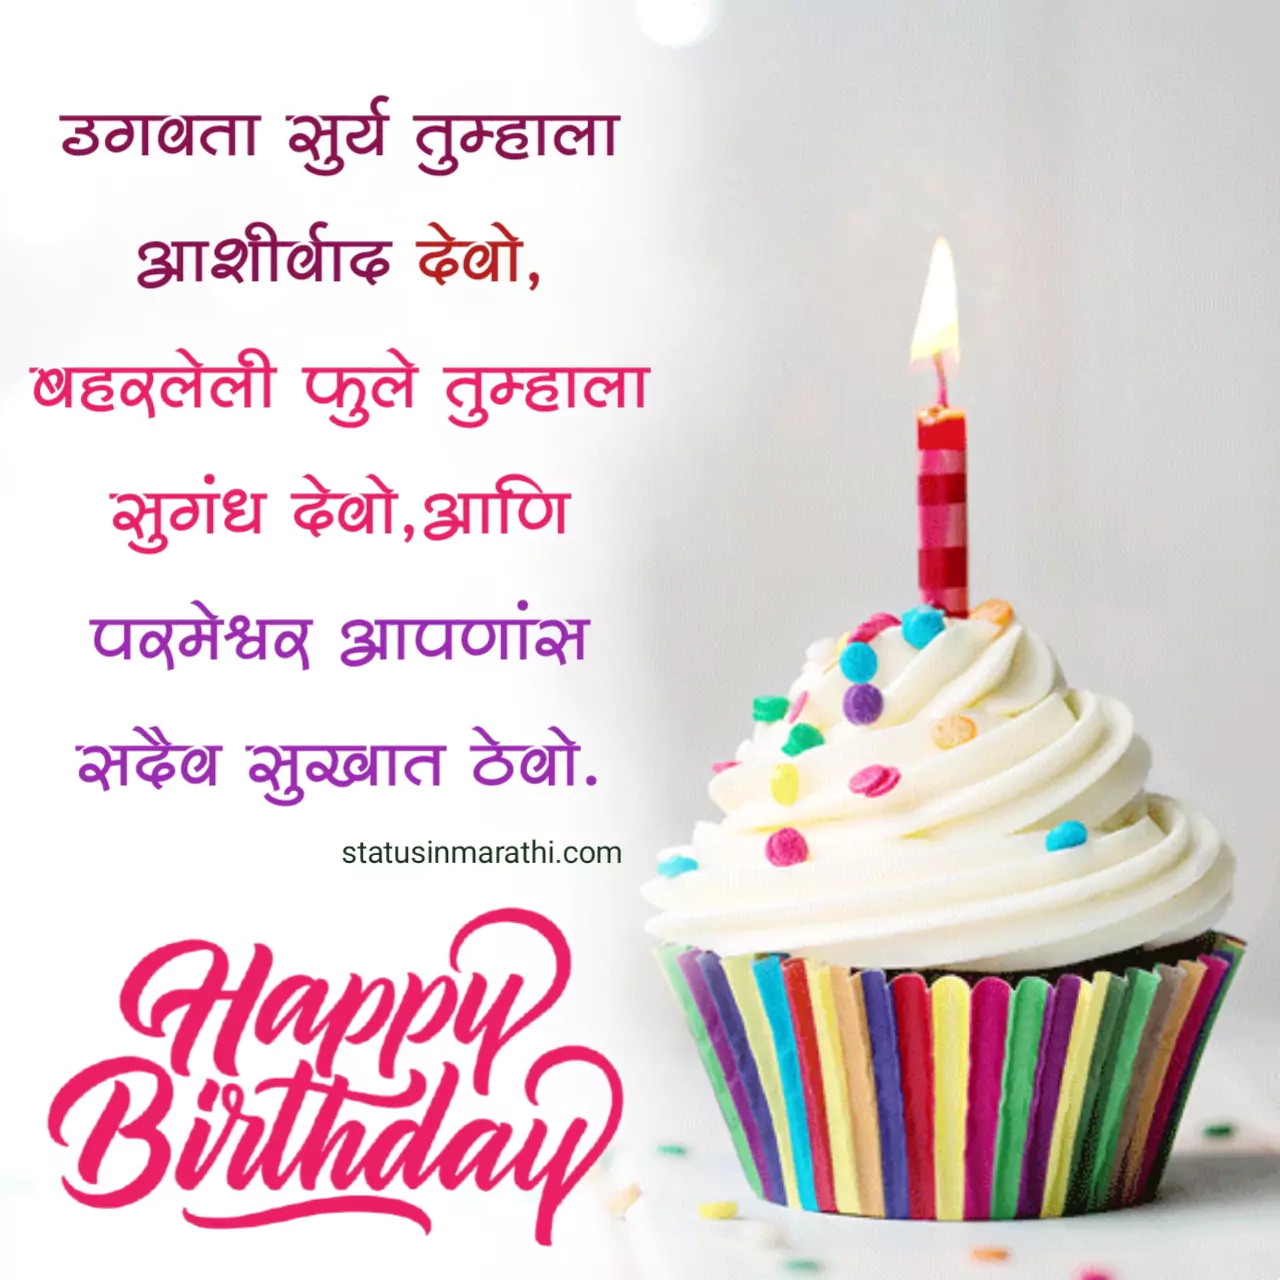 Happy birthday images in marathi